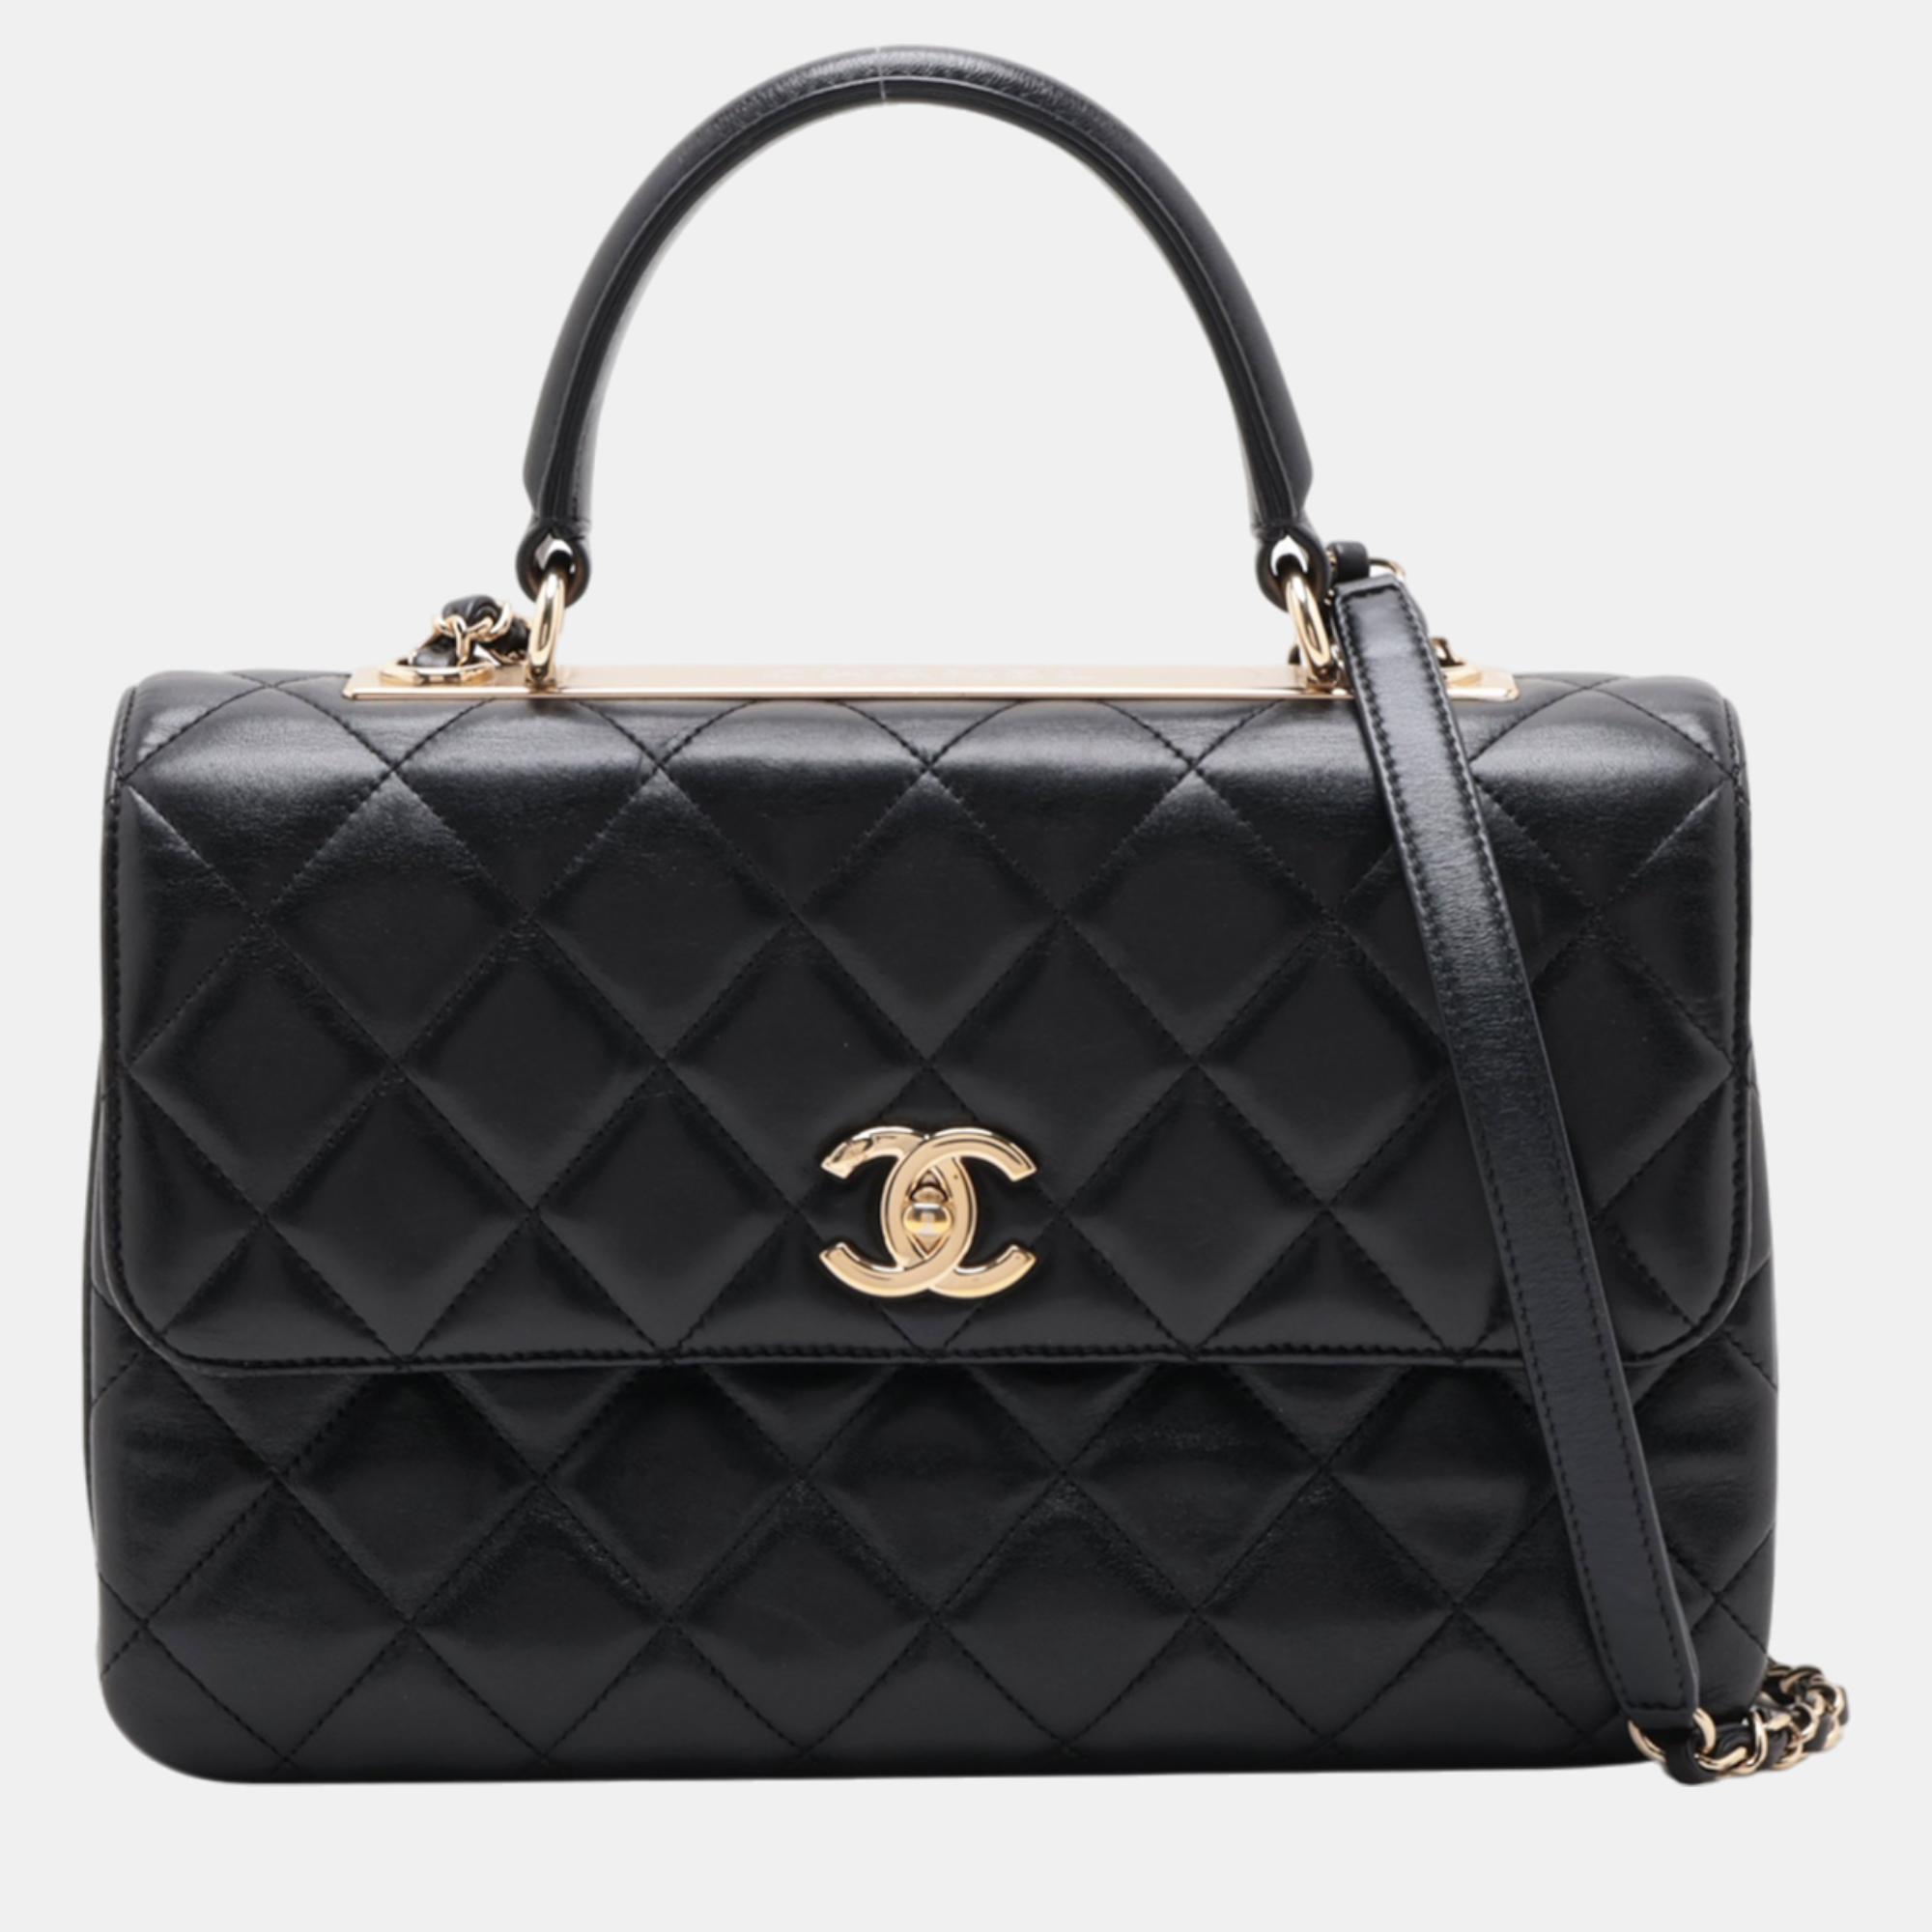 Chanel black leather trendy cc shoulder bag